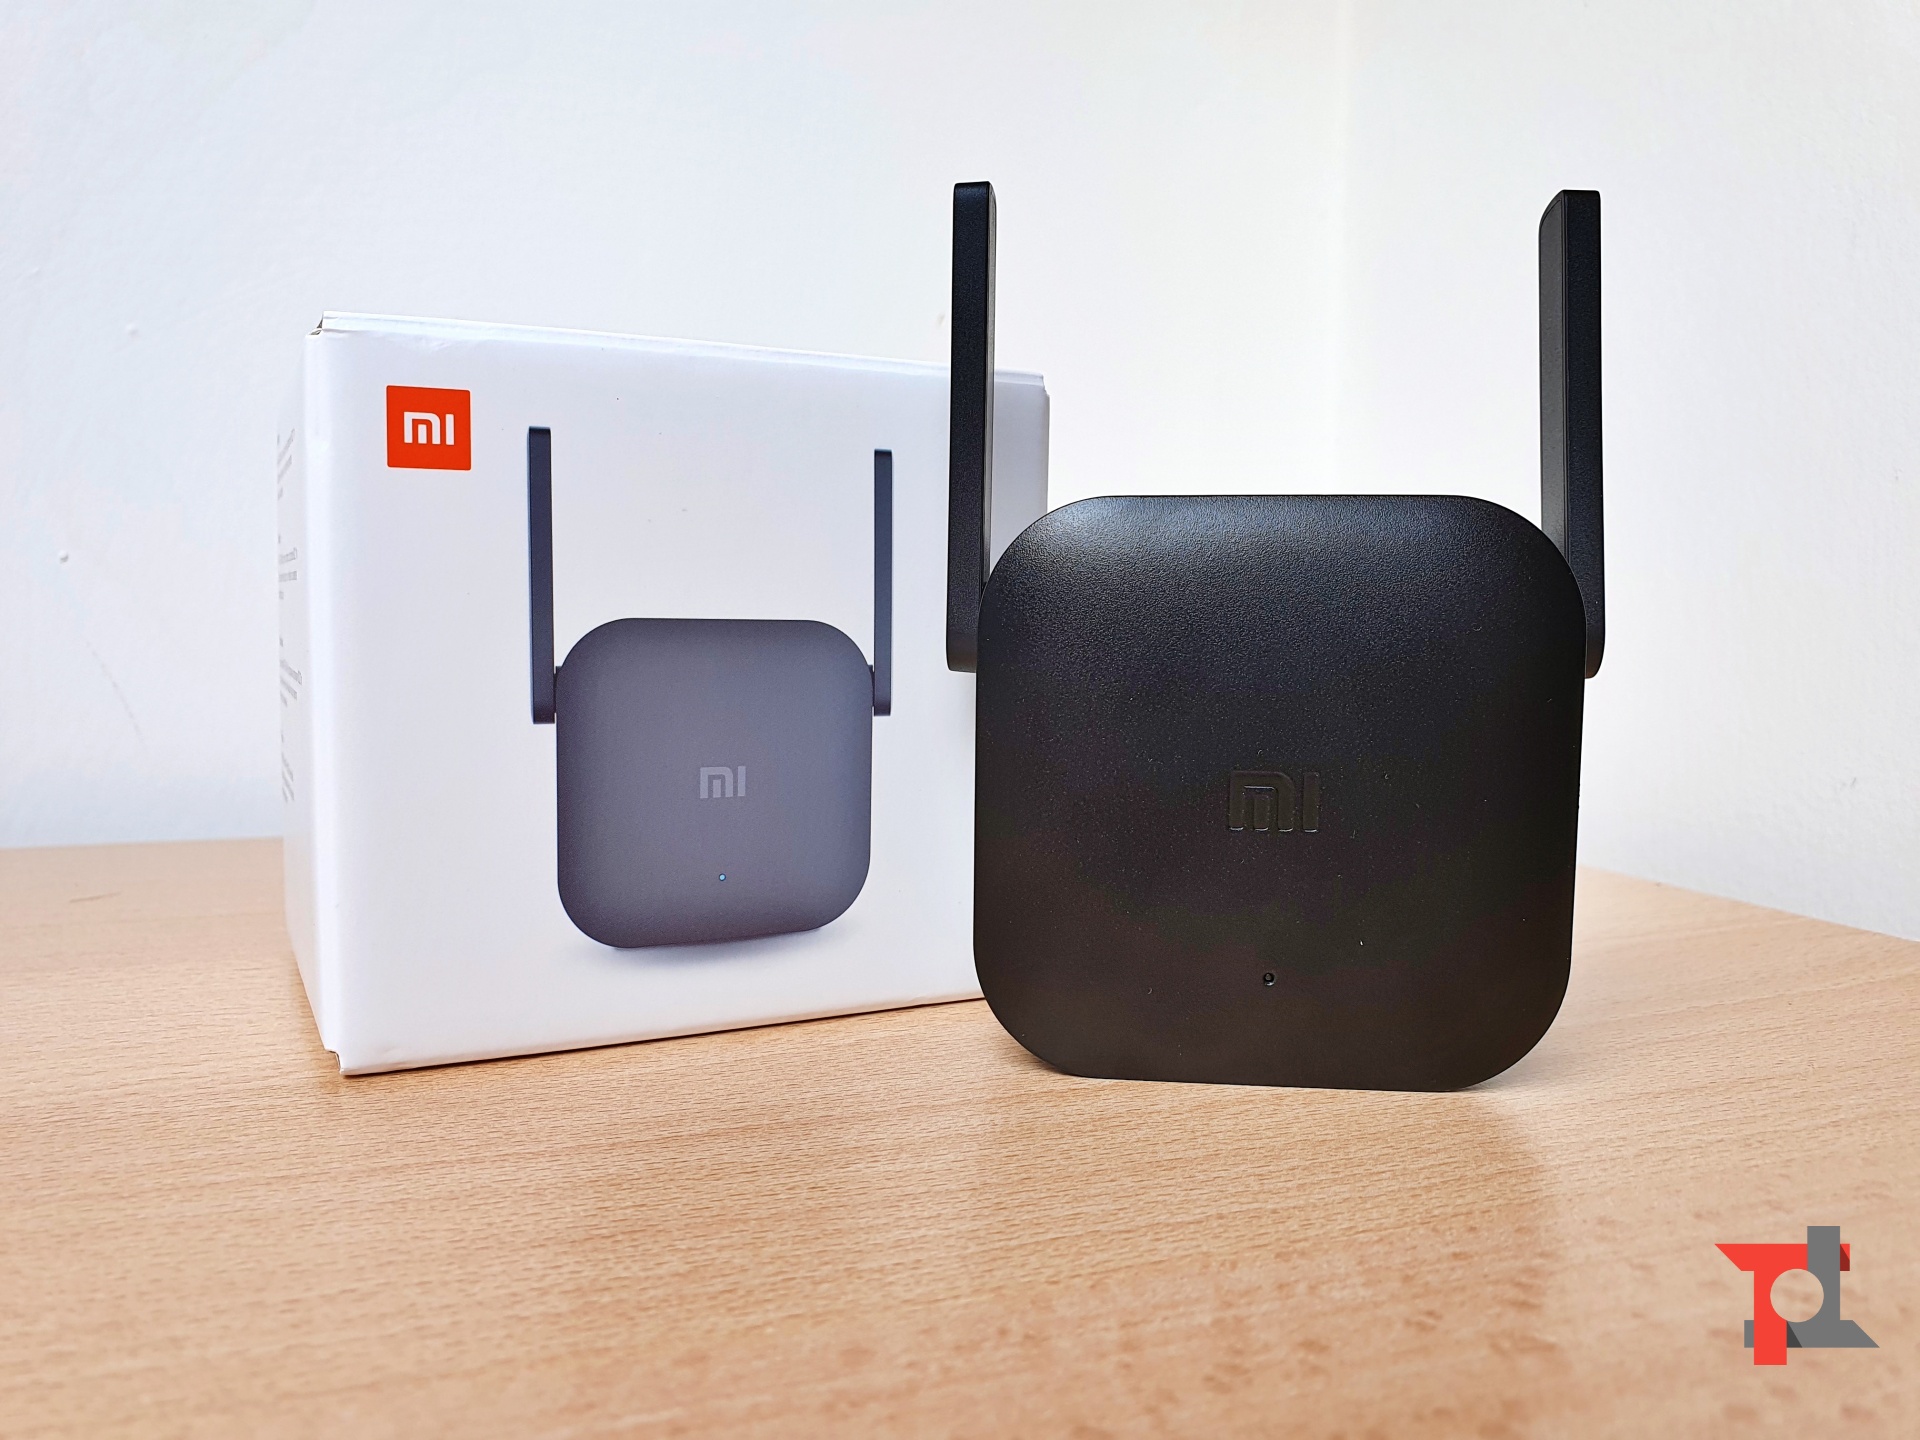 Xiaomi Mi Wi-Fi Range Extender Pro Ripetitore di rete Nero